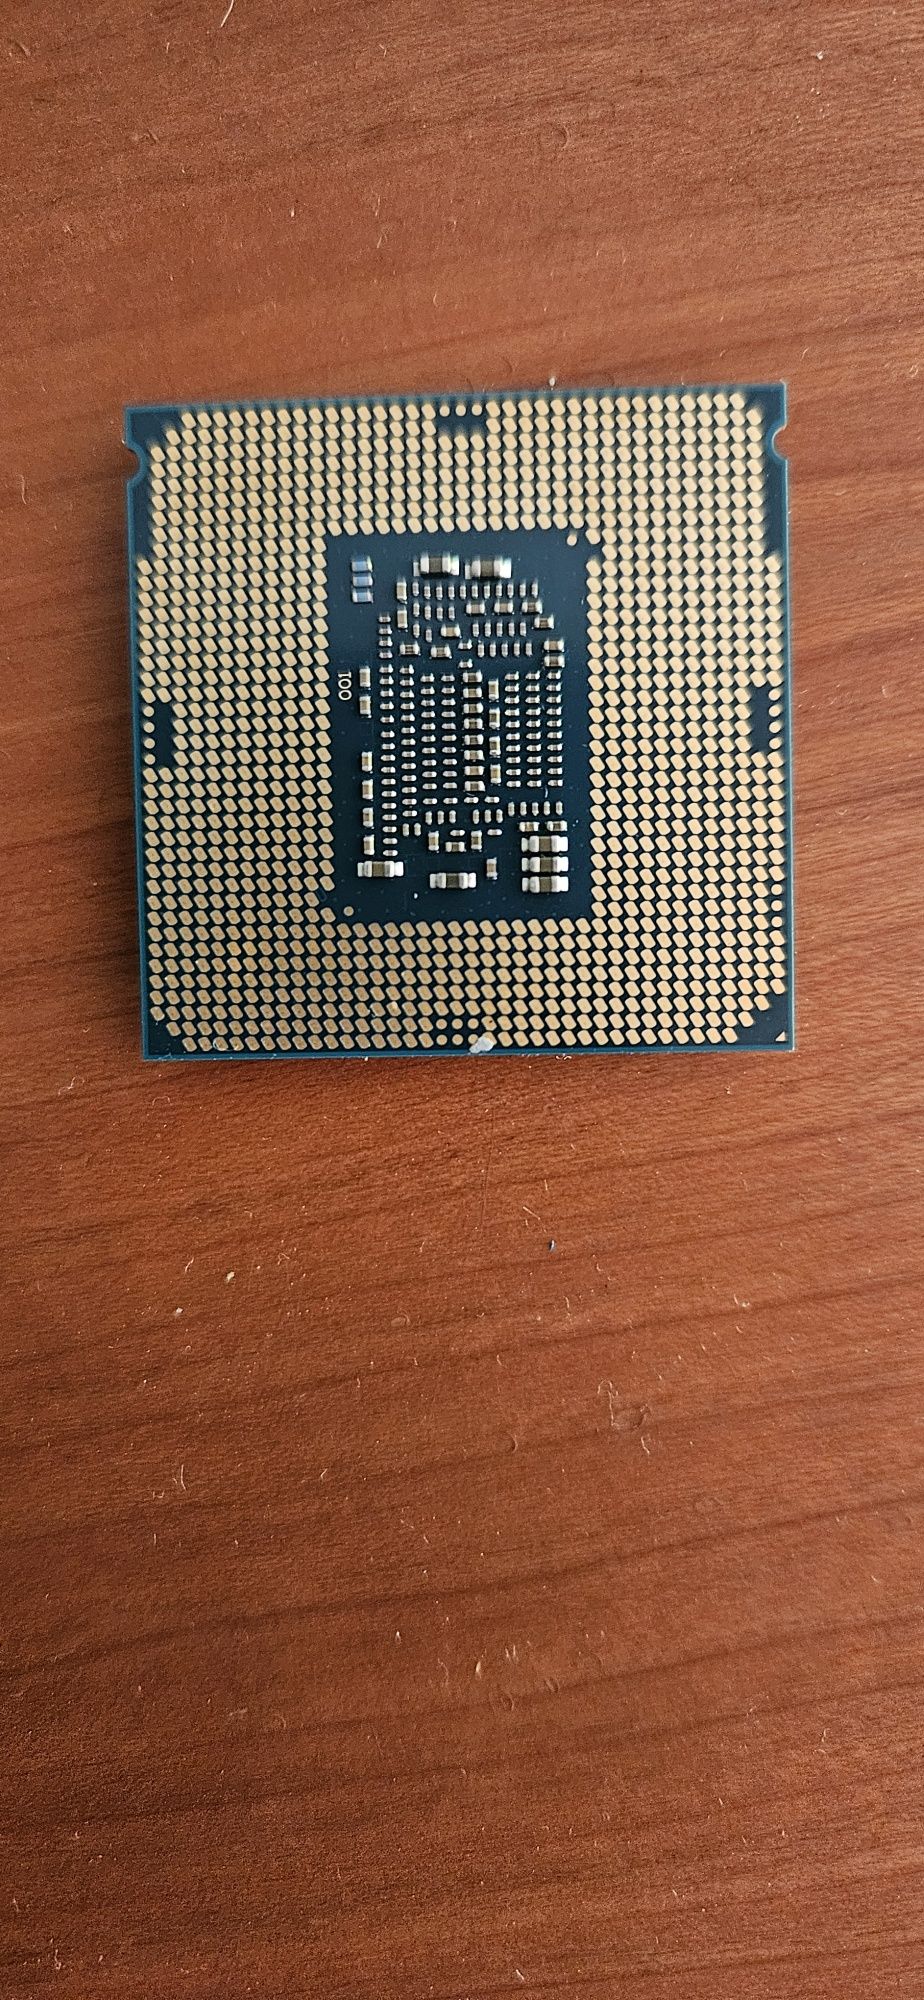 Processador Intel i5 7400